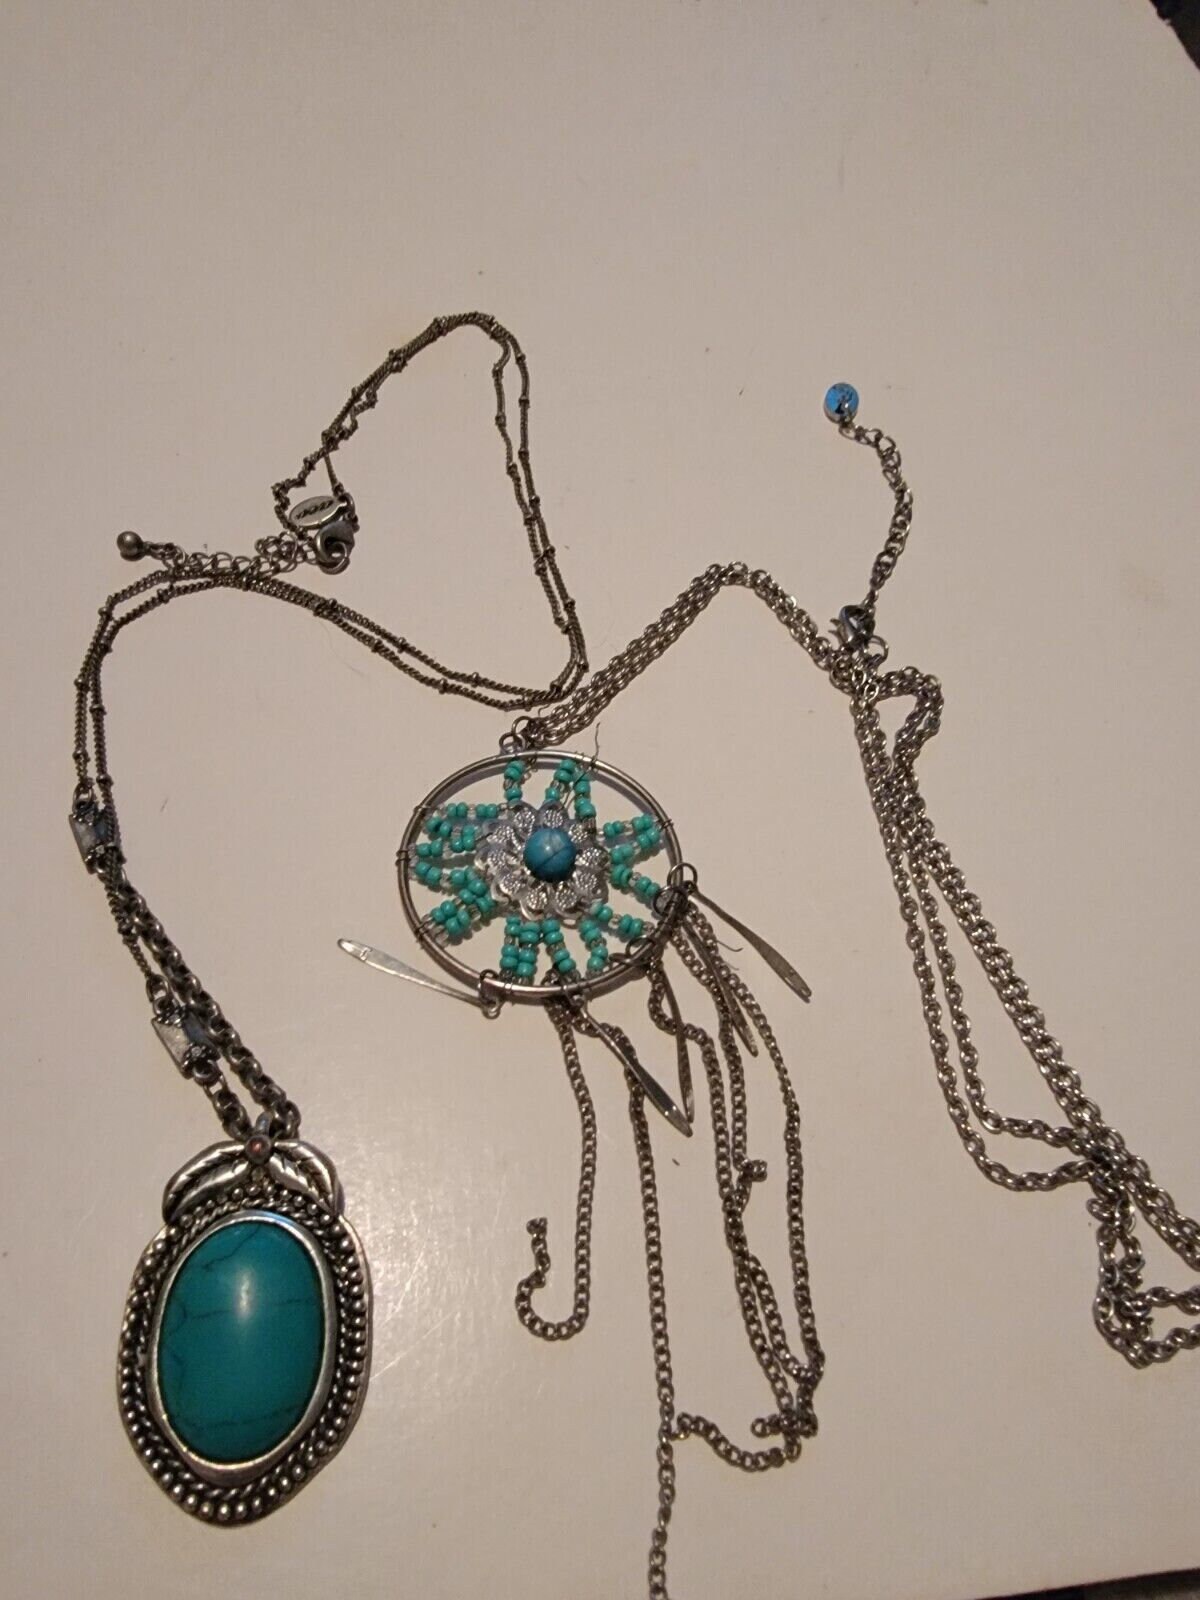 Mixed Small Glass Beads, 1.5 Oz Jewelry Making Beads, Craft Beads